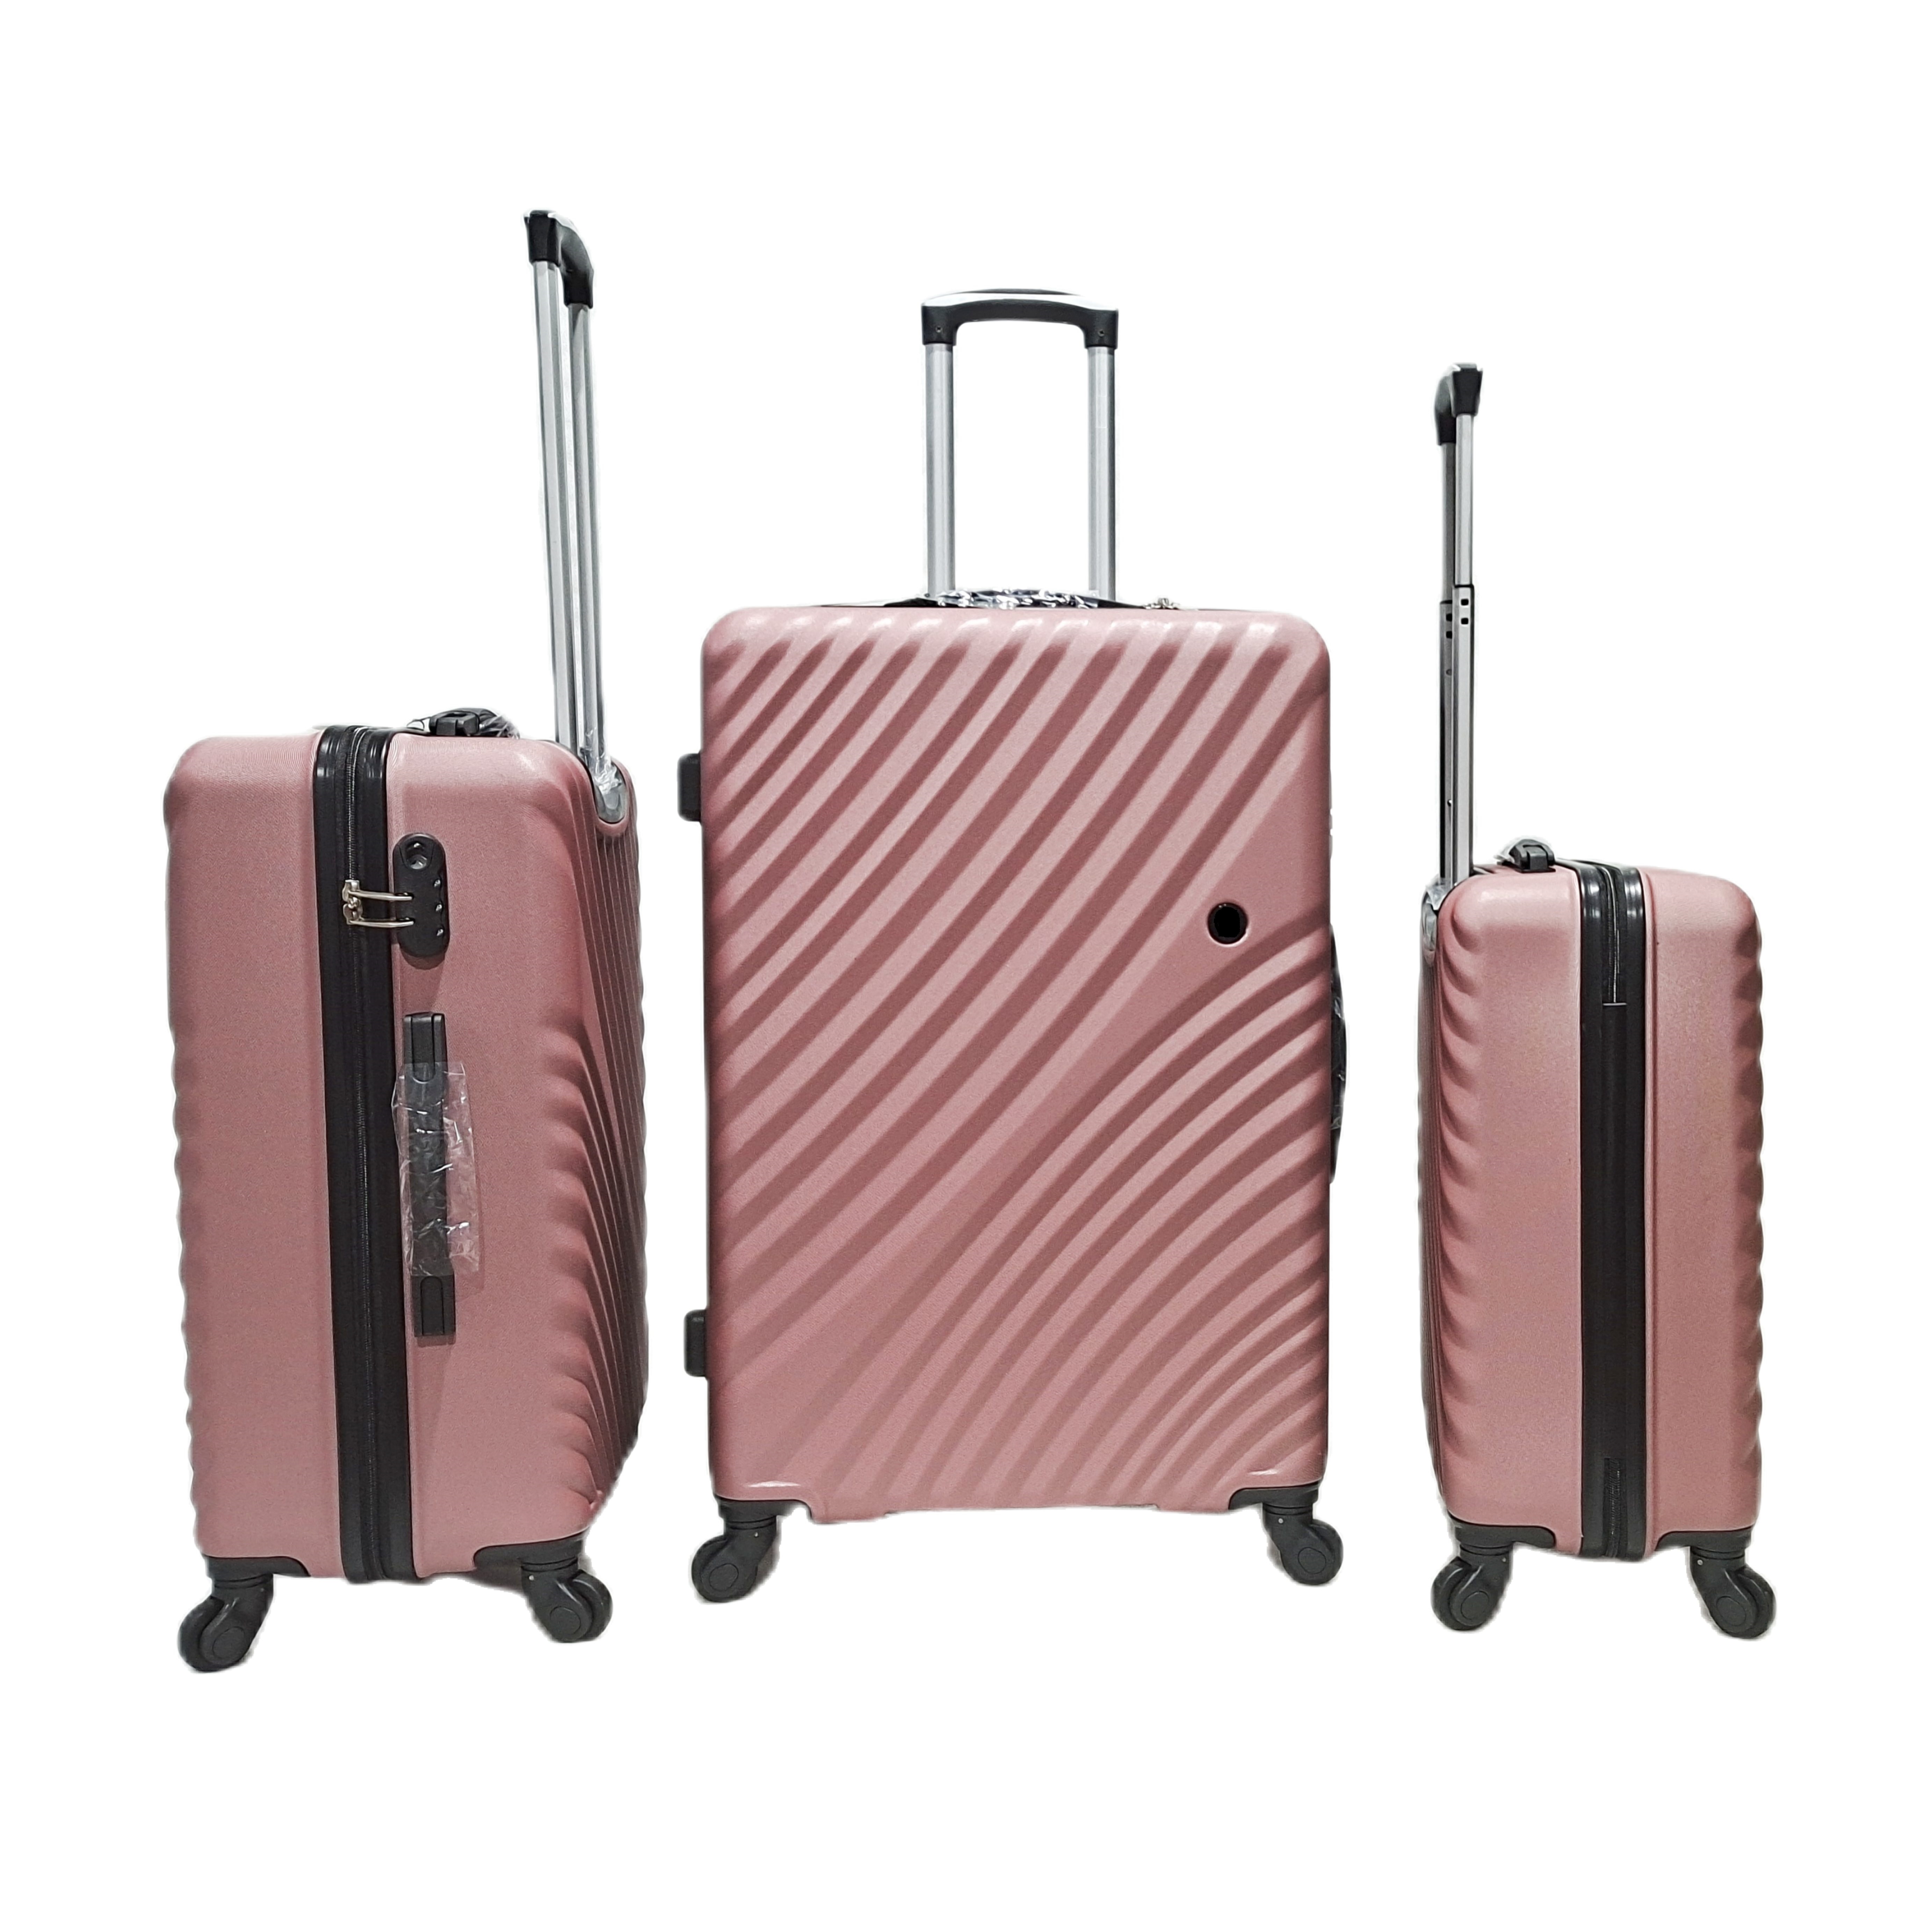 Nuevo diseño de maletas ABS, bolsas de viaje para equipaje, juego de maletas con ruedas giratorias de 4 ruedas